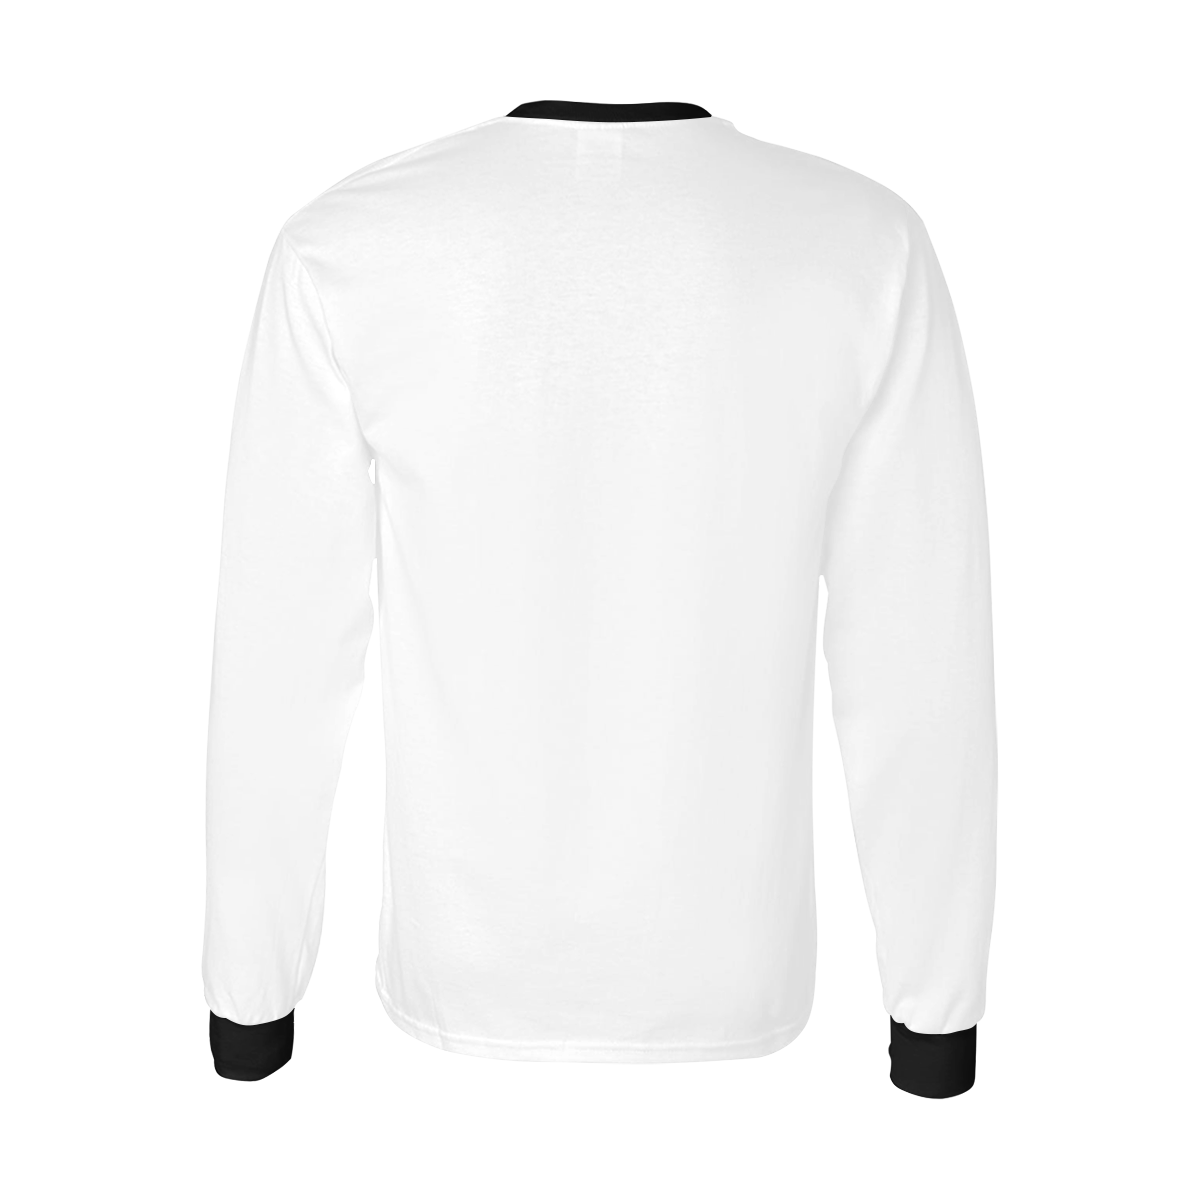 What? White Men's All Over Print Long Sleeve T-shirt (Model T51)